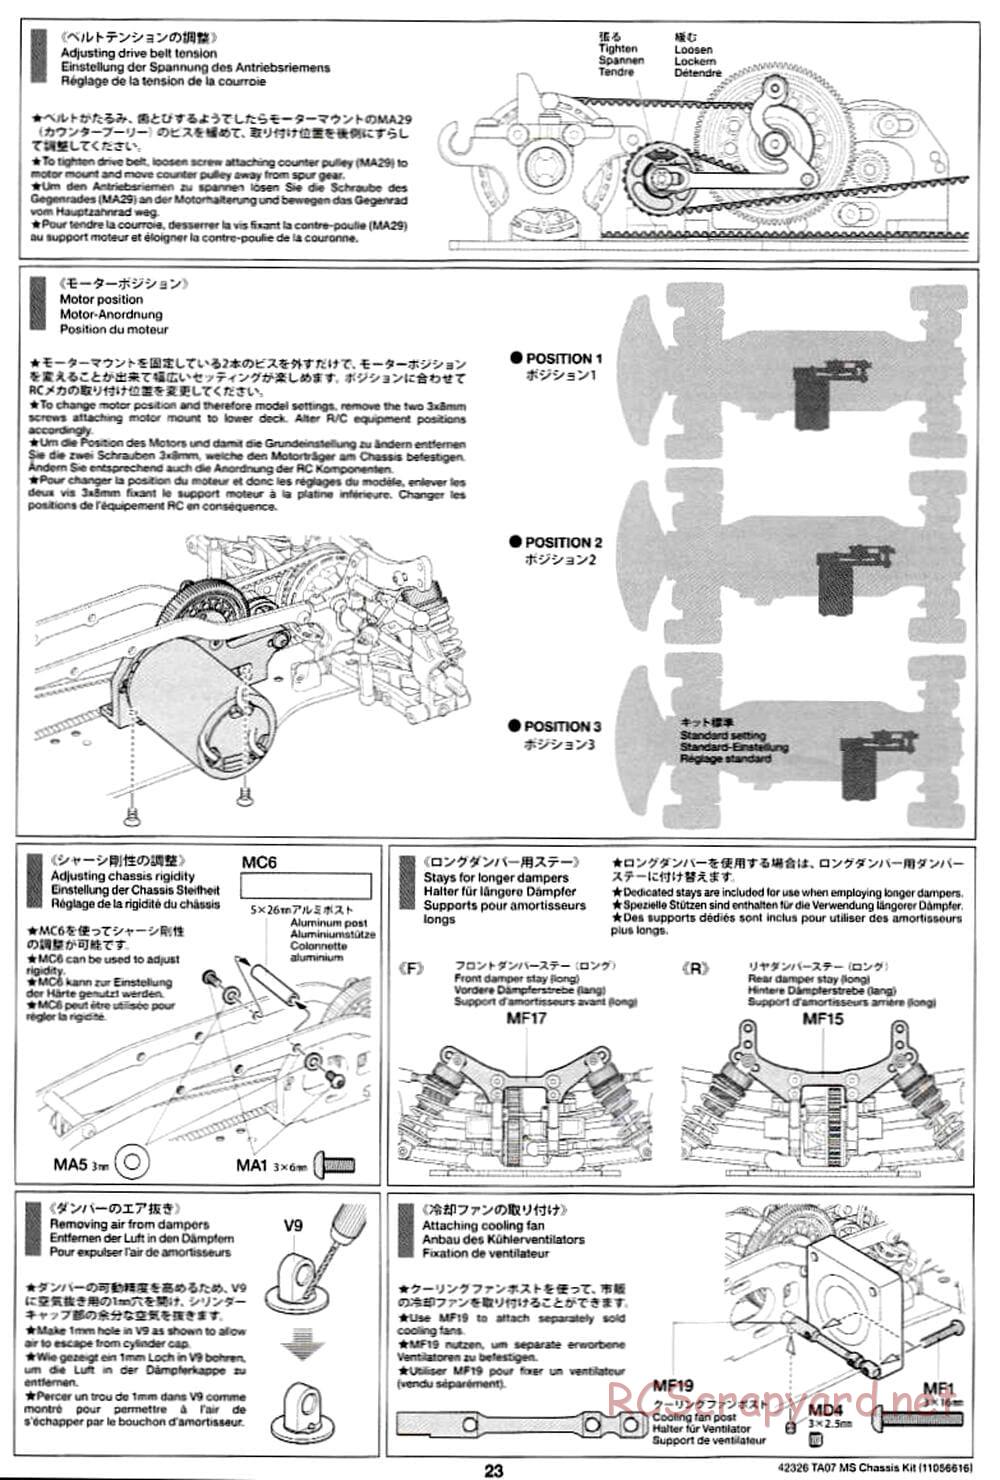 Tamiya - TA07 MS Chassis - Manual - Page 23